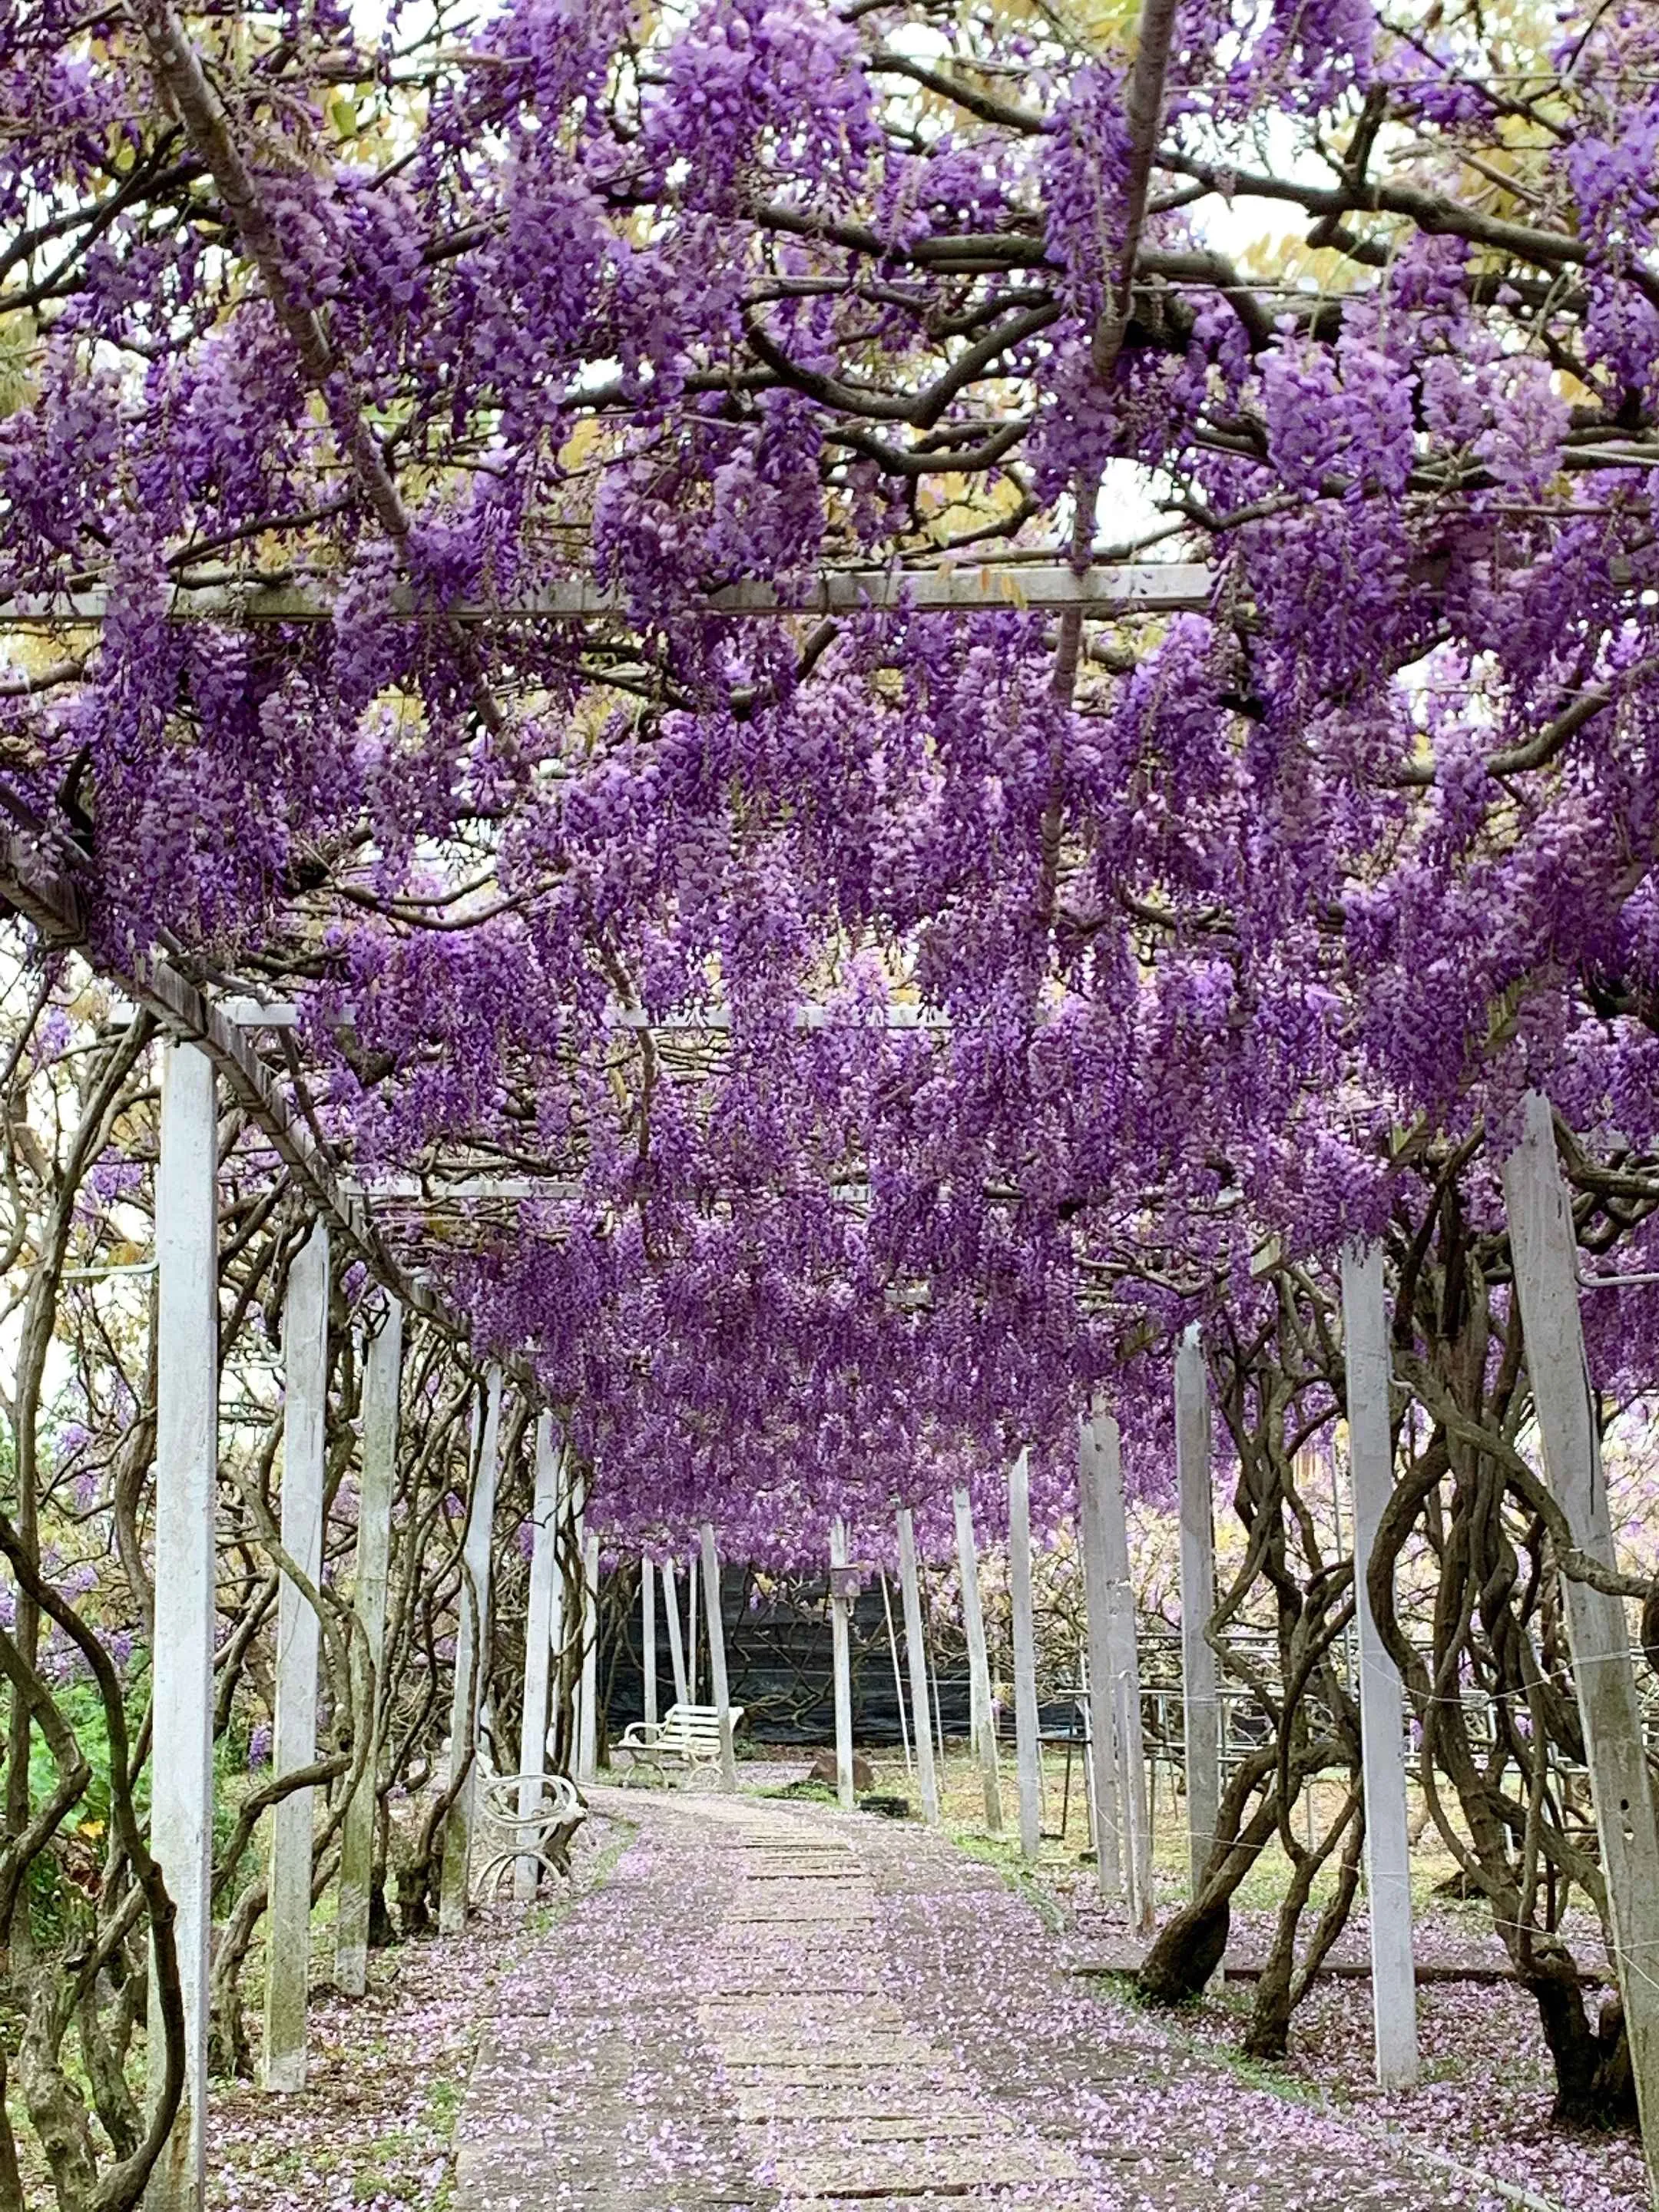 【賞花人士】花園每處皆是茂密的紫藤花叢